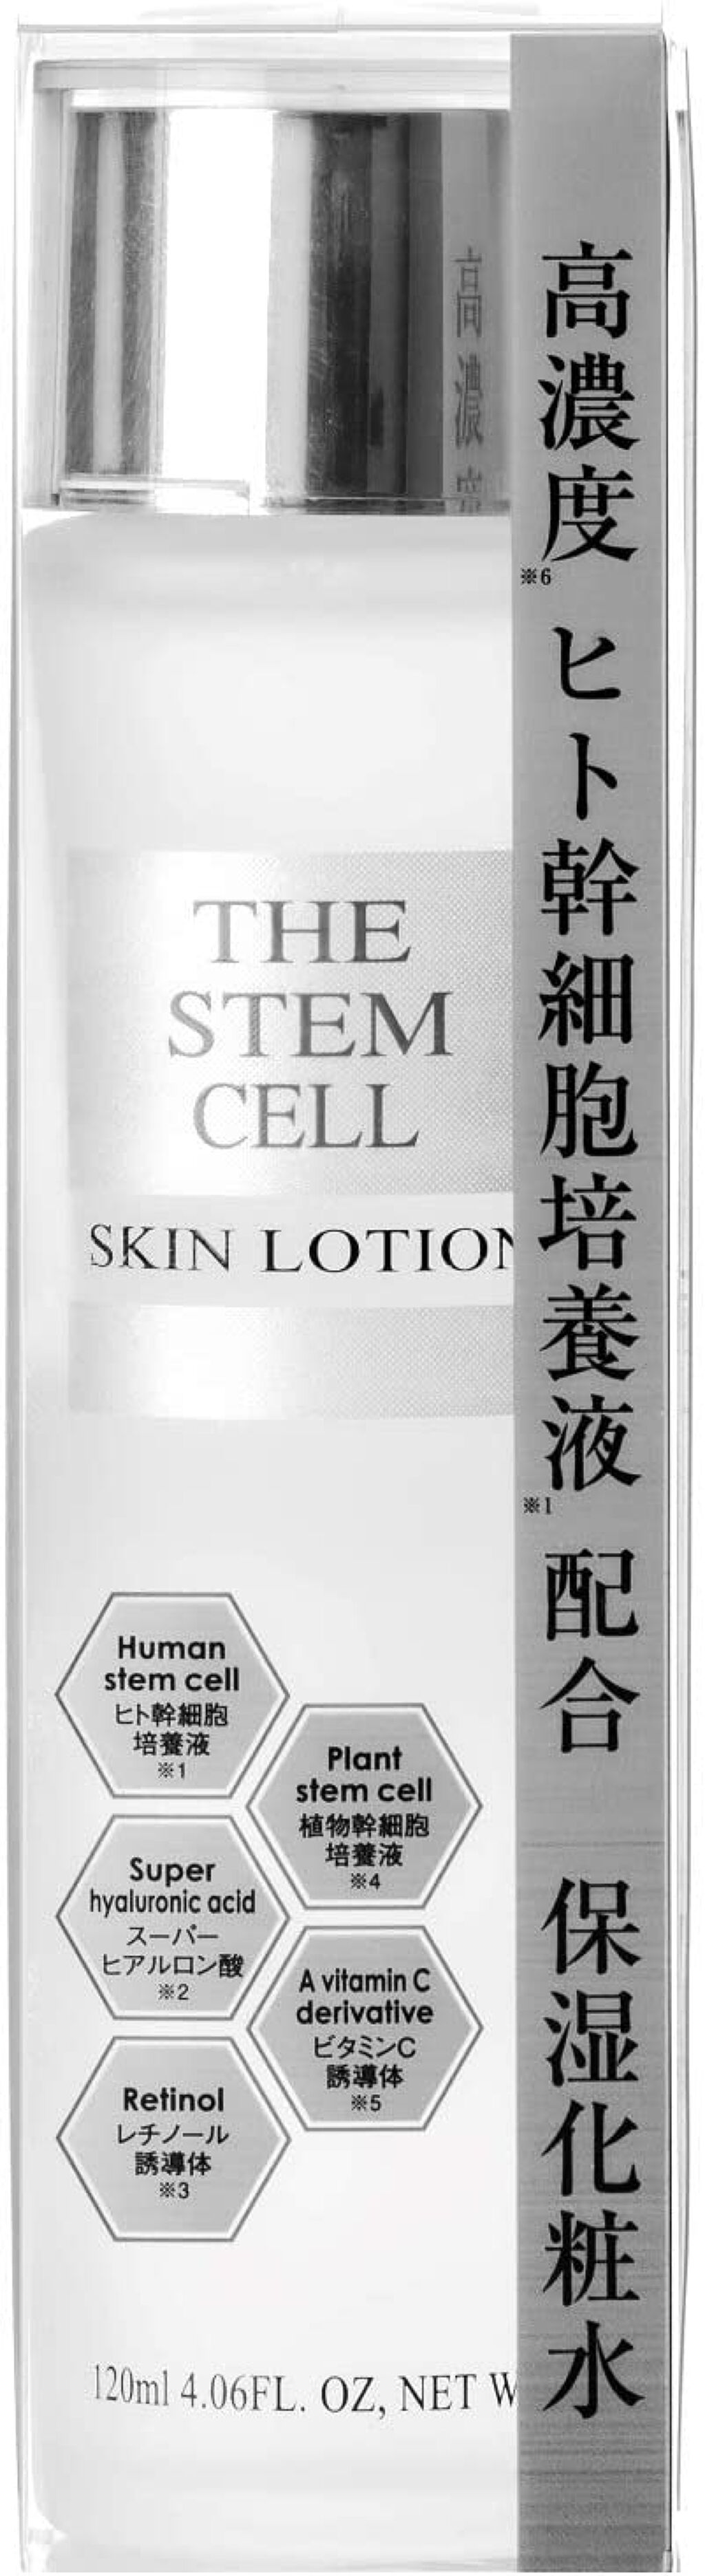 高濃度ヒト幹細胞培養液配合 保湿化粧水  THE STEM CELL